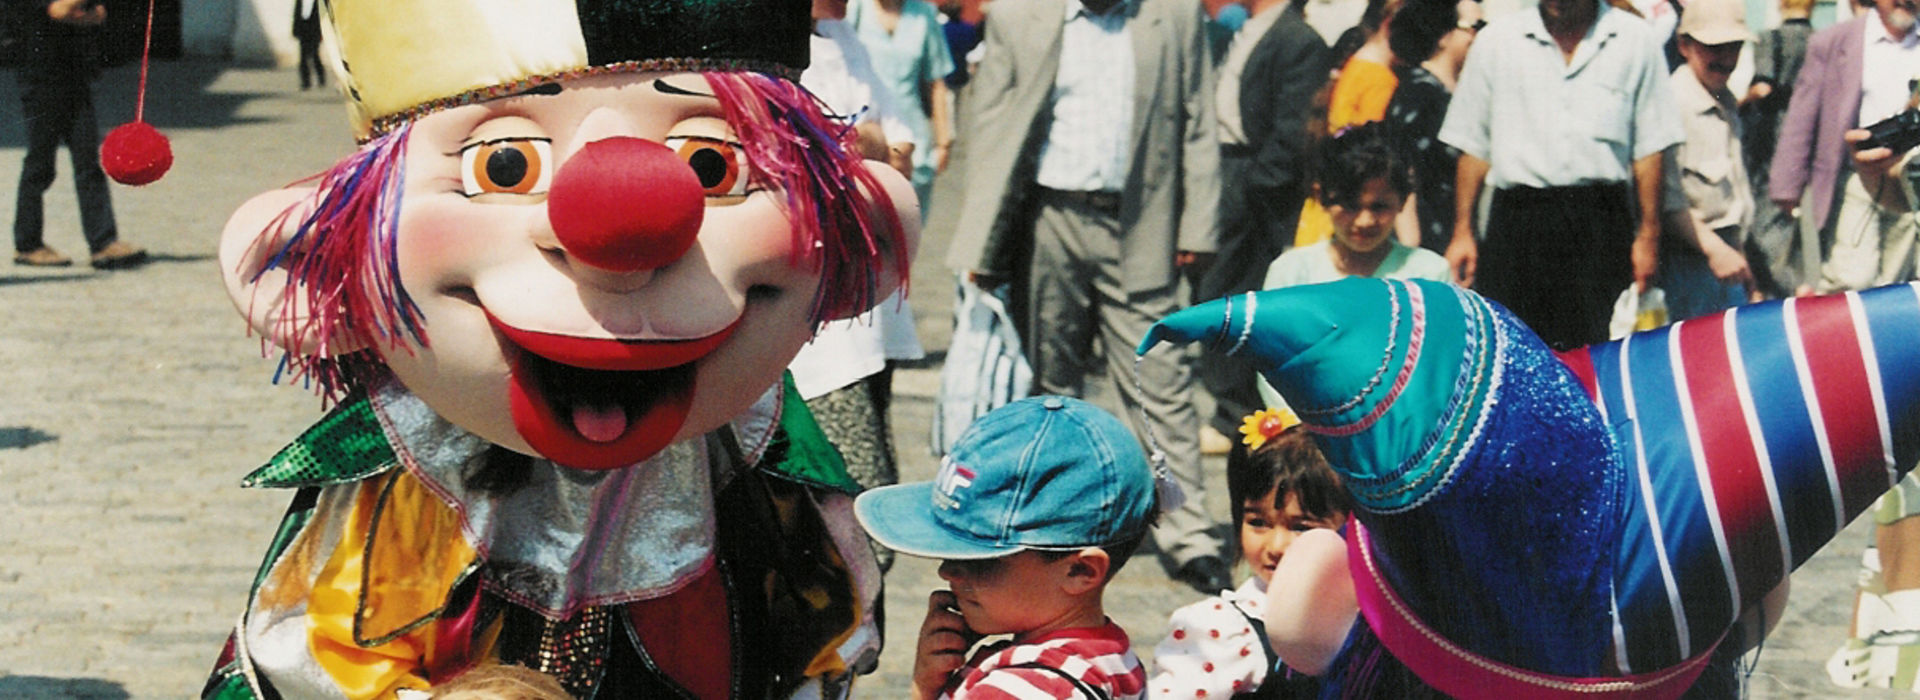 Большие куклы на городской праздник в Москве, ростовые куклы на детский праздник в москве